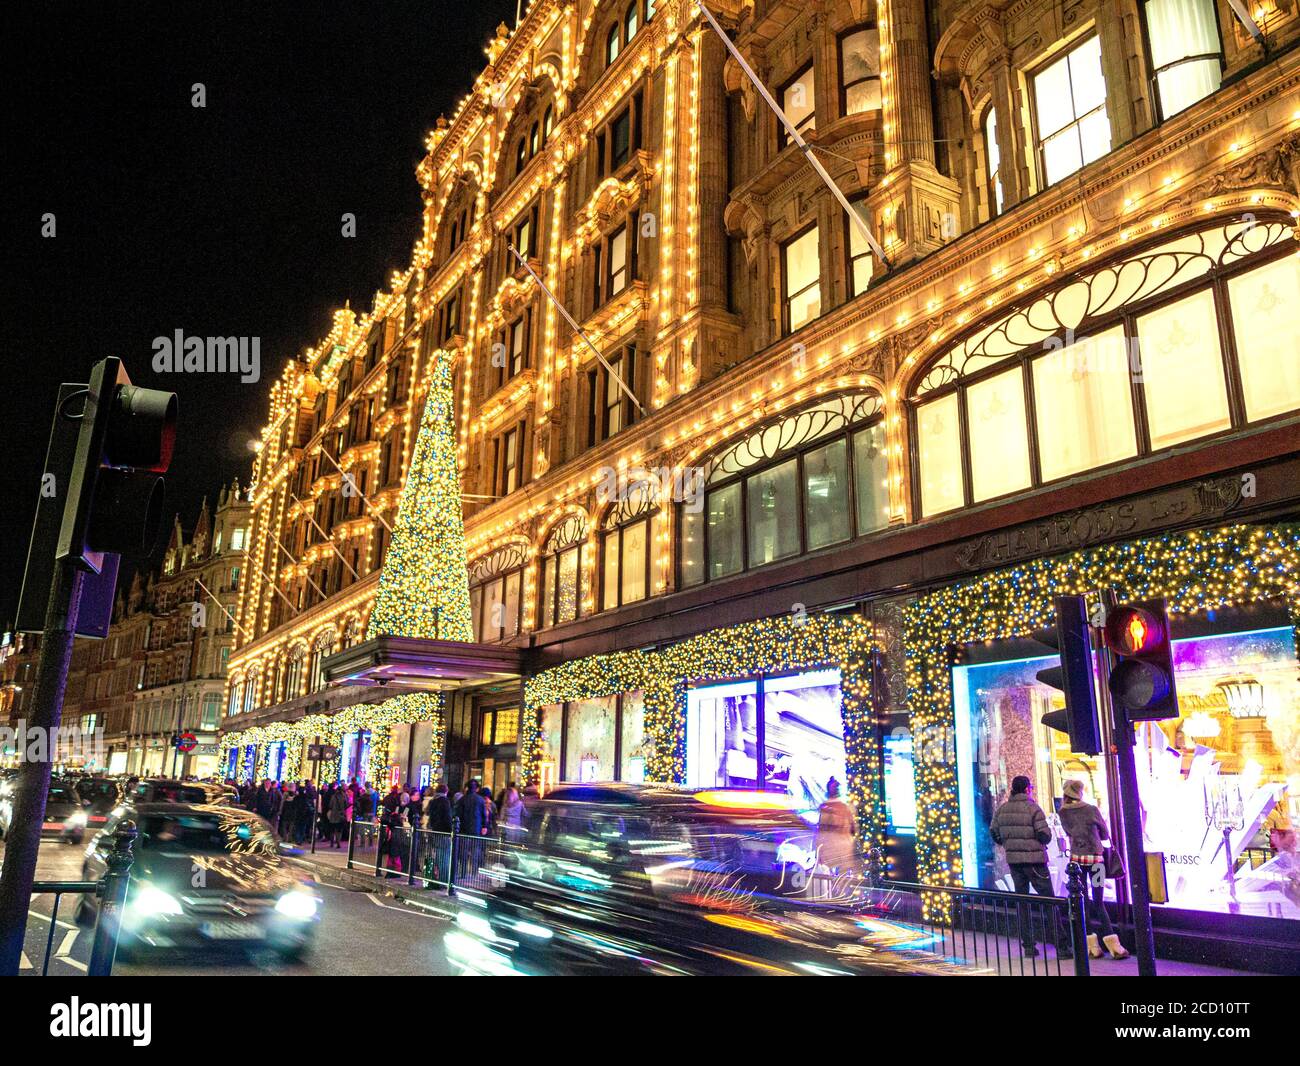 WEIHNACHTSEINKÄUFE LONDON HARRODS BAUMKÄUFER LONDON Harrods Kaufhaus in der Abenddämmerung mit Weihnachtslichtern, Einkaufsbummel und vorbeifahrenden Autos Knightsbridge London SW1 Stockfoto